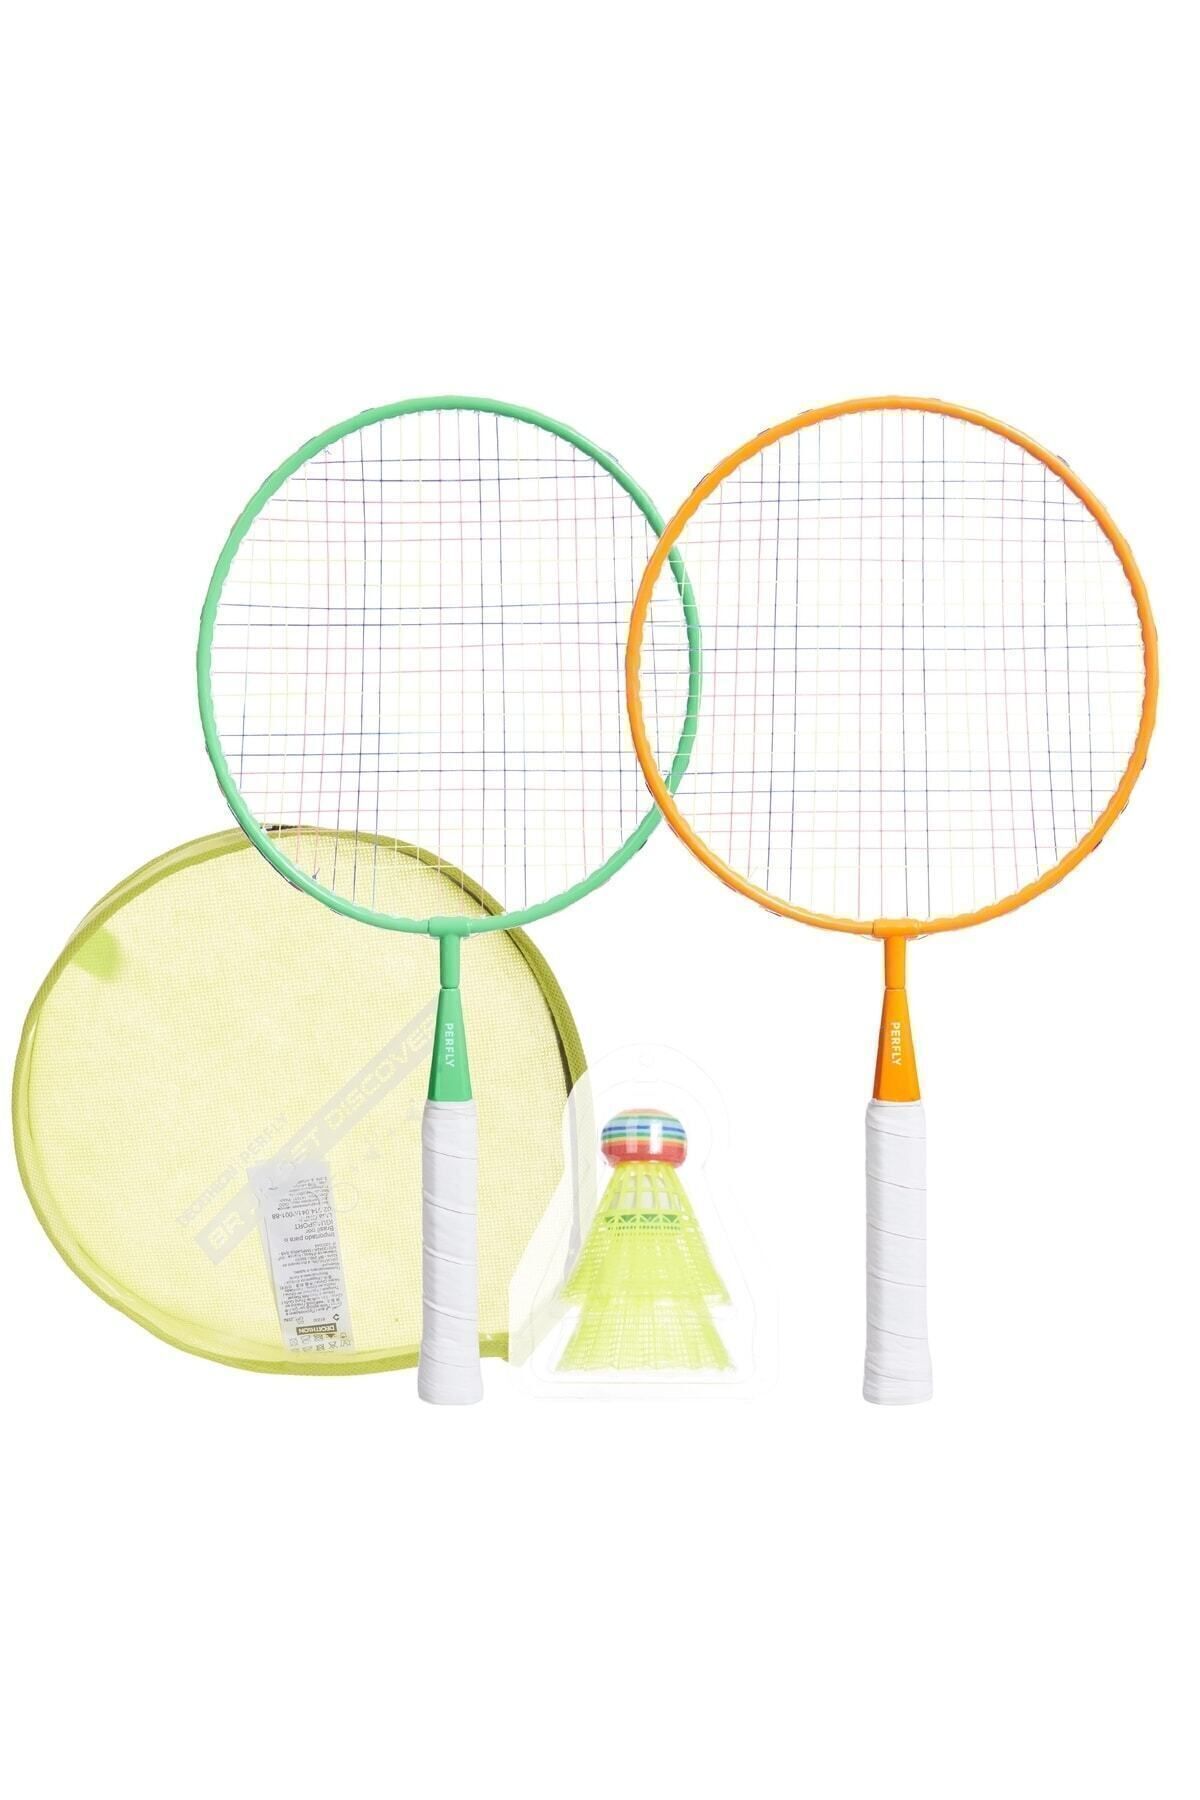 Decathlon Perfly Çocuk Badminton Raket Seti - Discover 106491